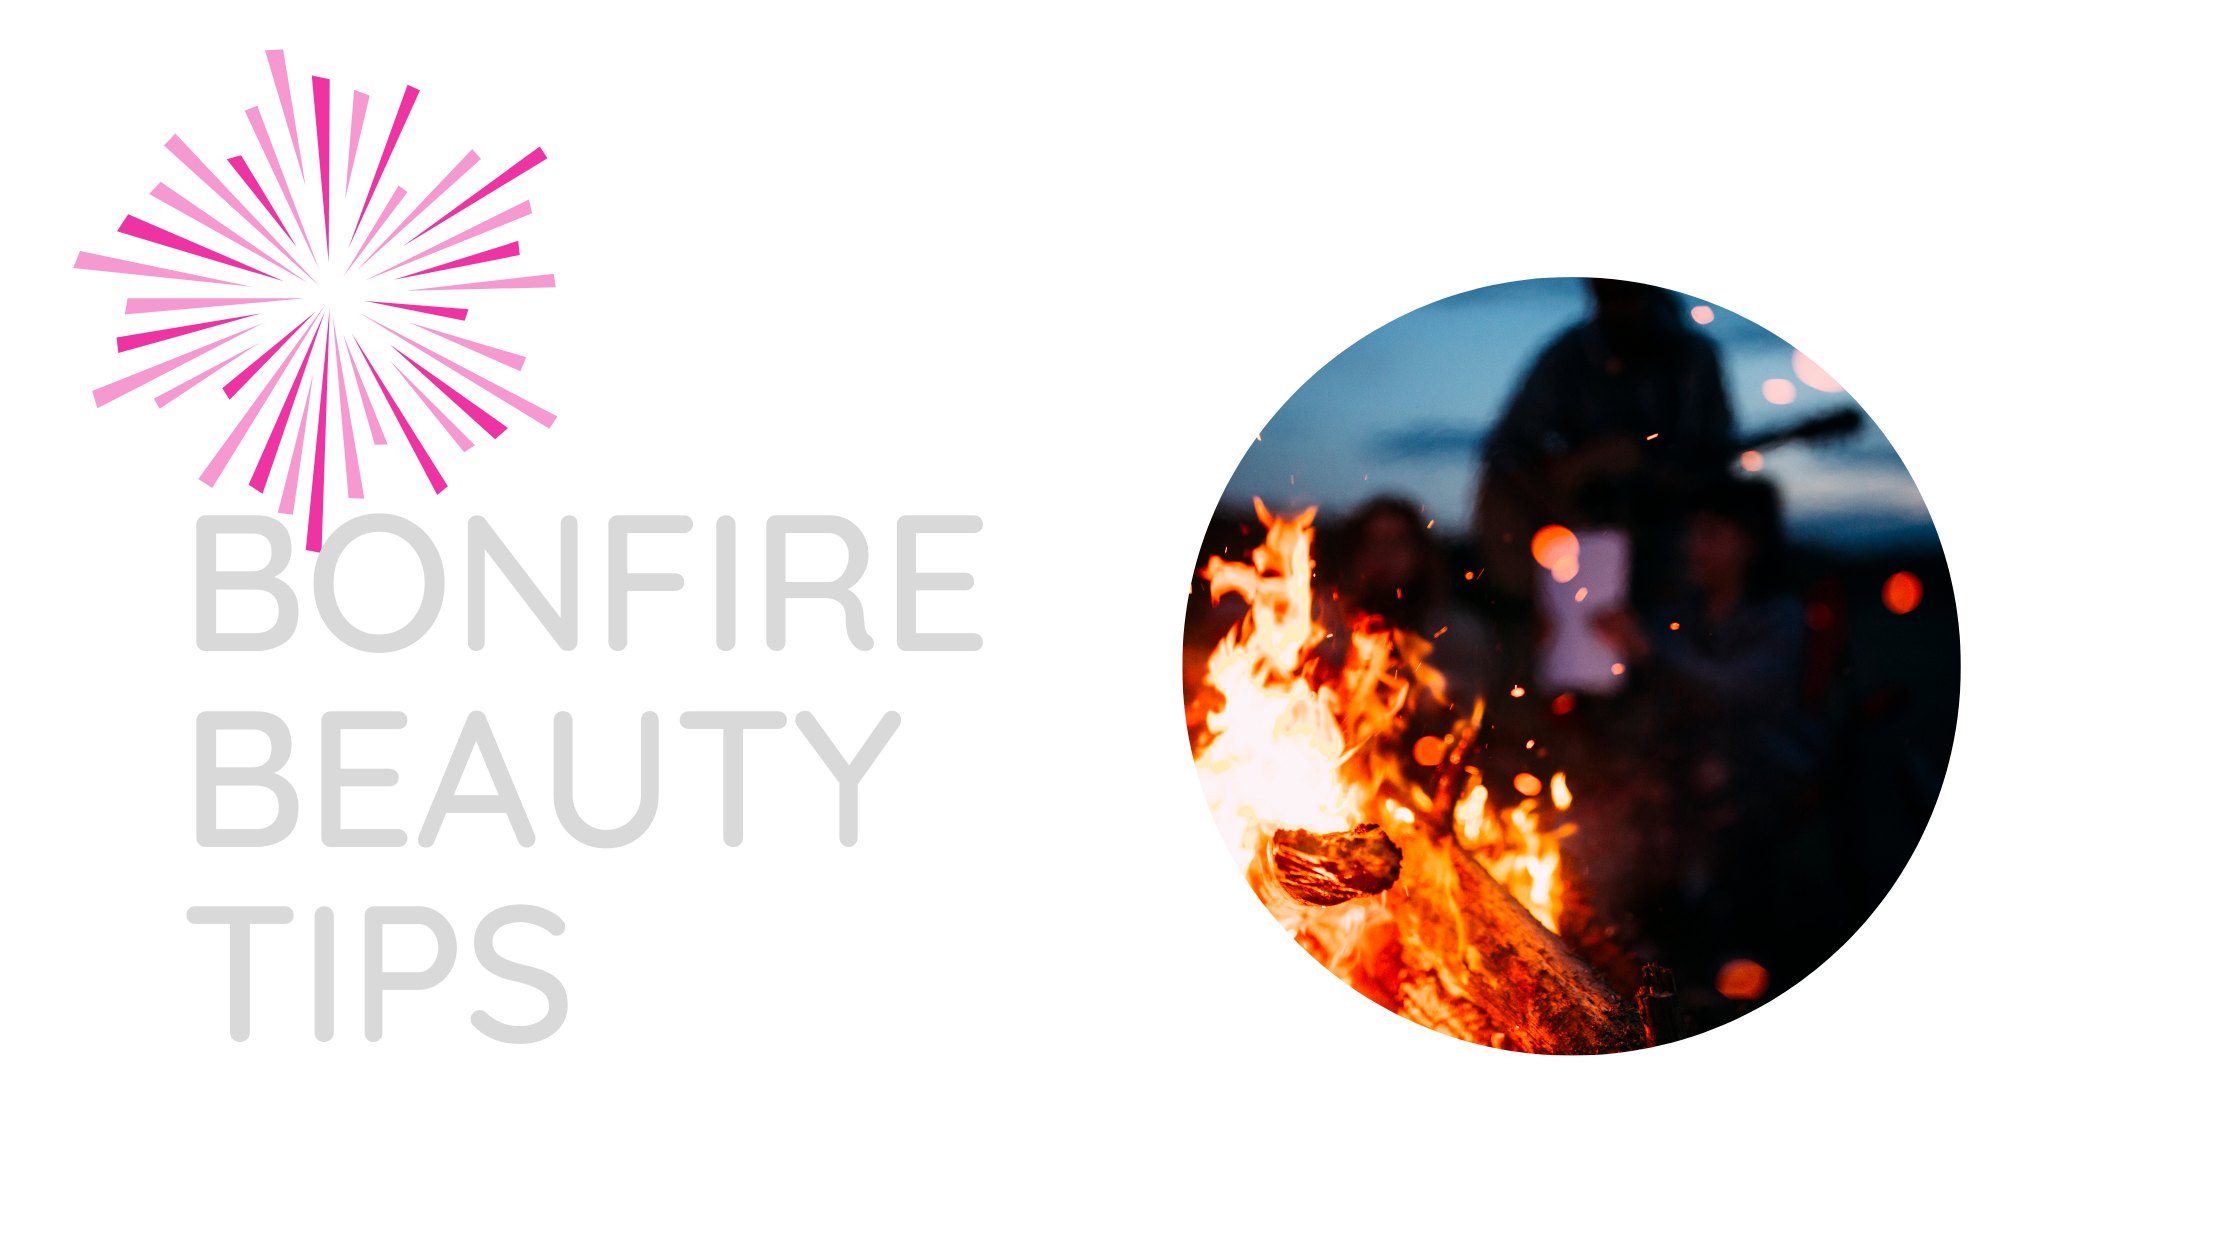 Bonfire beauty tips 